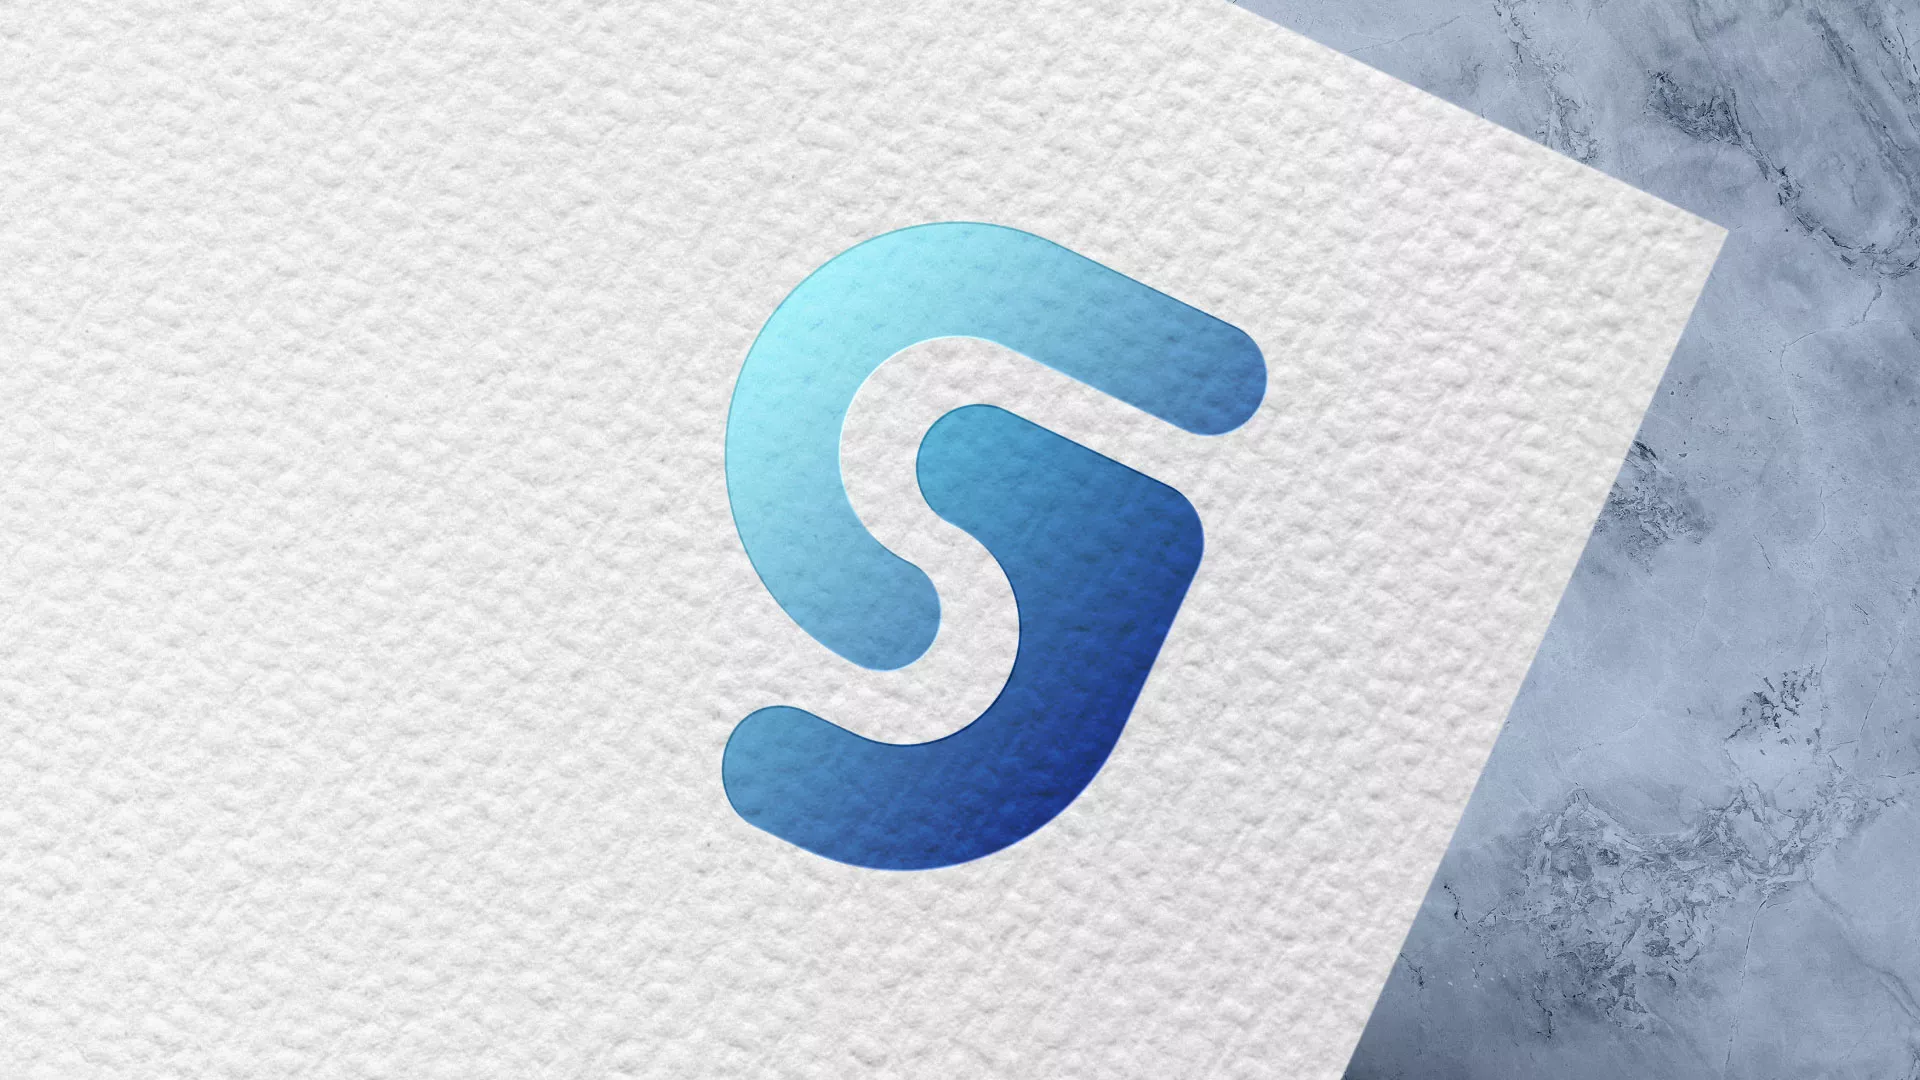 Разработка логотипа газовой компании «Сервис газ» в Шагонаре